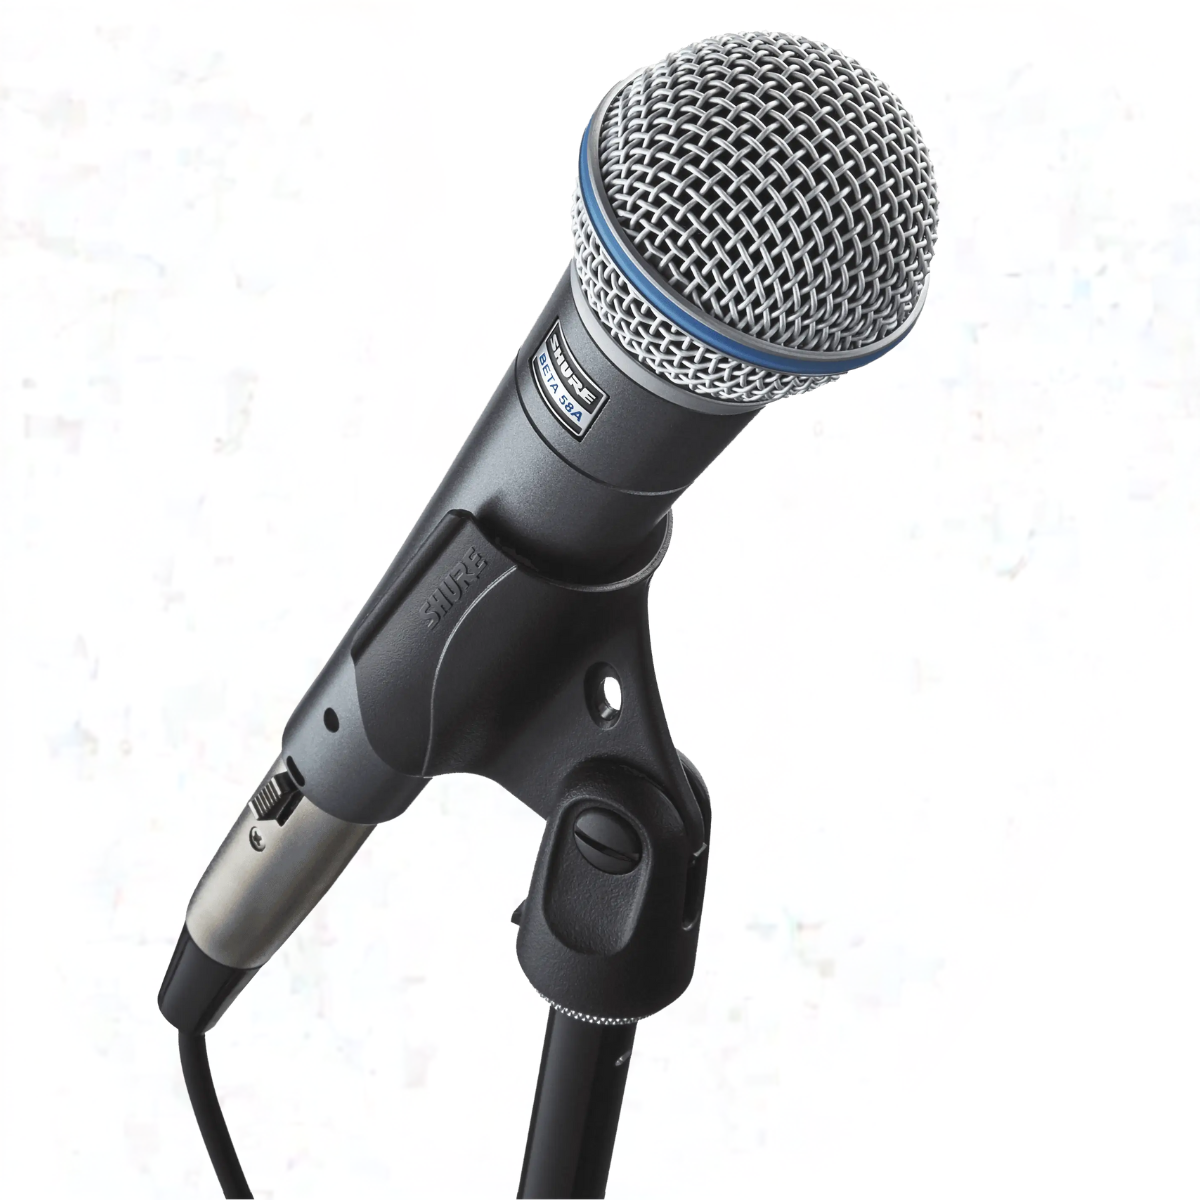 microfono shure beta 58a Comprar en tienda onlineshoppingcenterg Colombia centro de compras en linea osc2